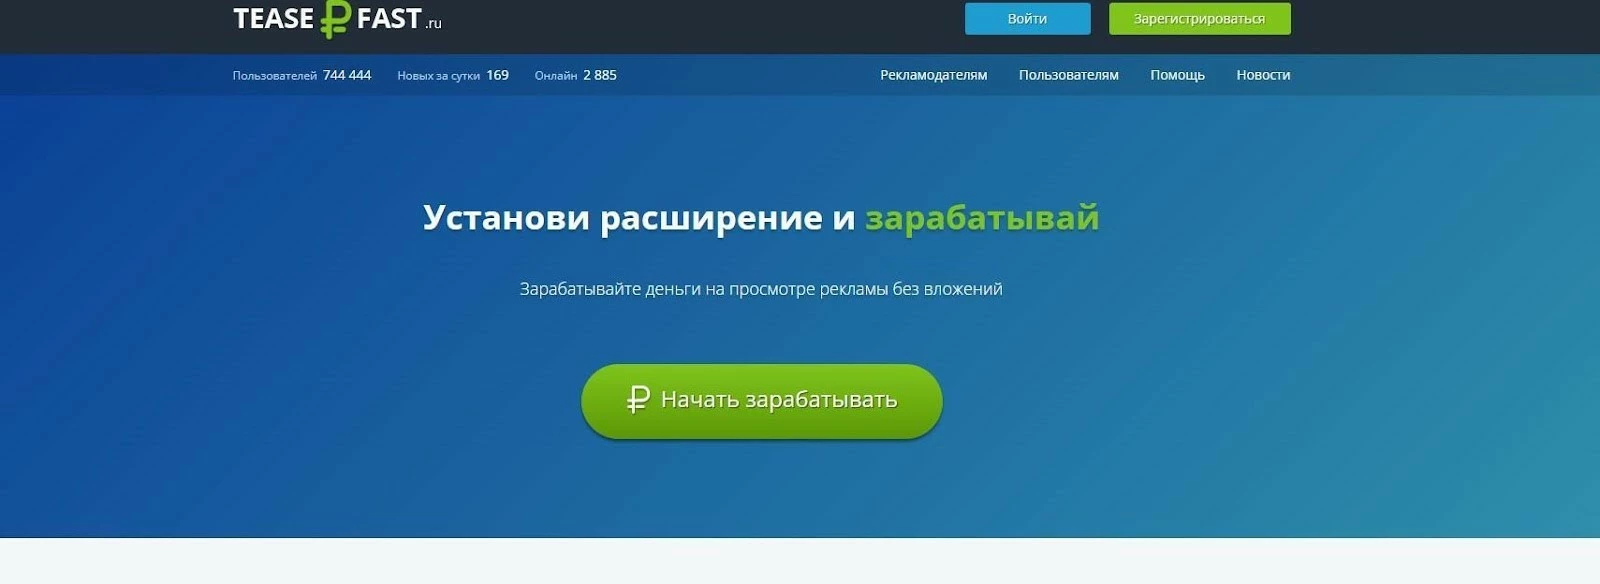 Браузерное расширение TeaserFast.ru для заработка на просмотре рекламы